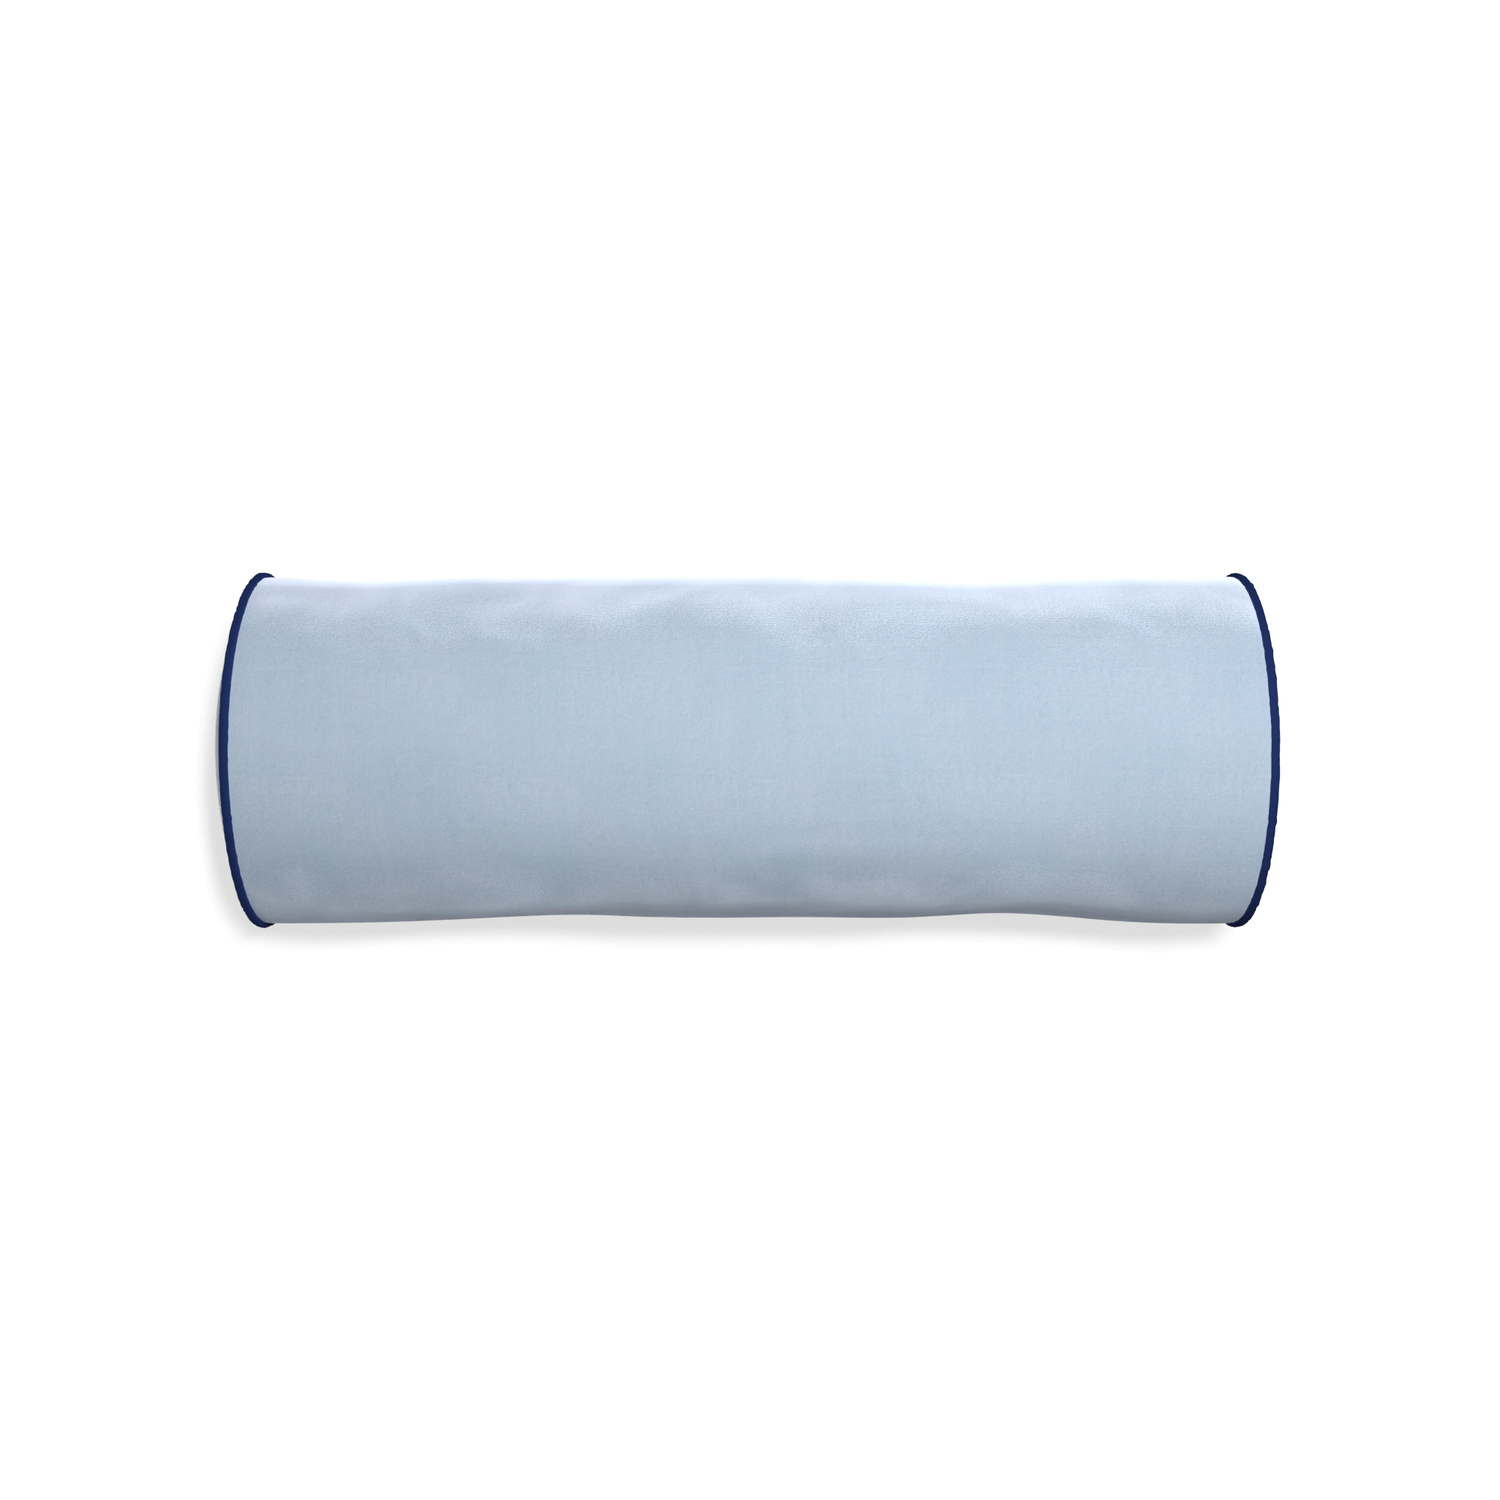 Bolster sky velvet custom pillow with midnight piping on white background